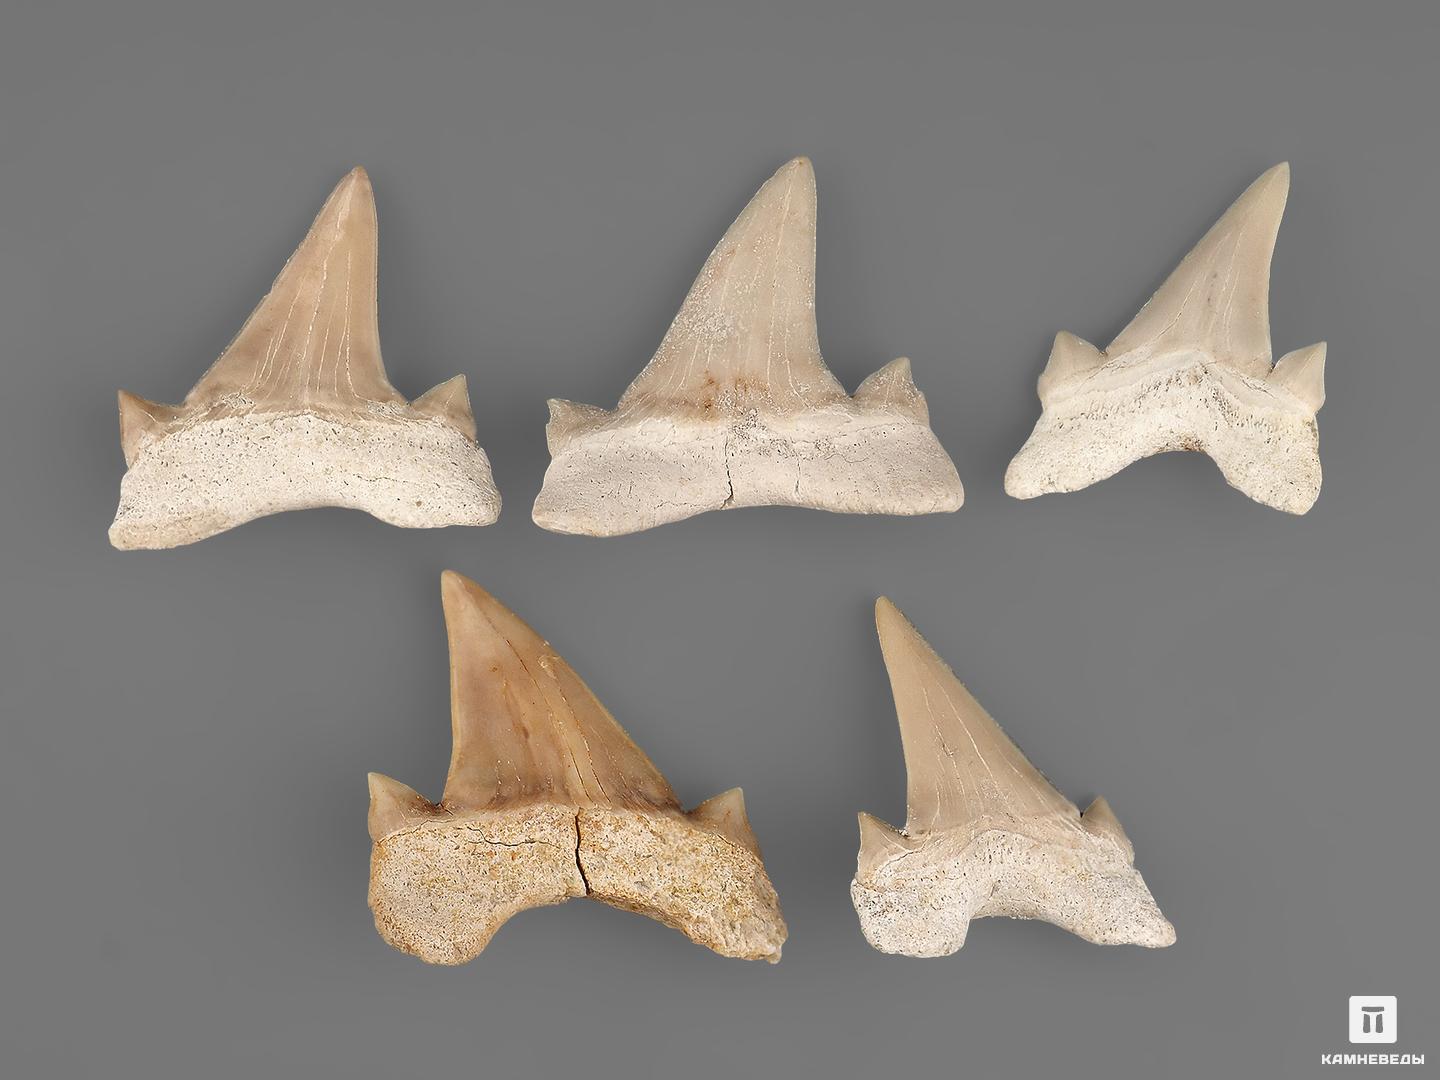 Зуб акулы Otodus obliquus (высший сорт), 3х2,8 см, 21494, фото 3